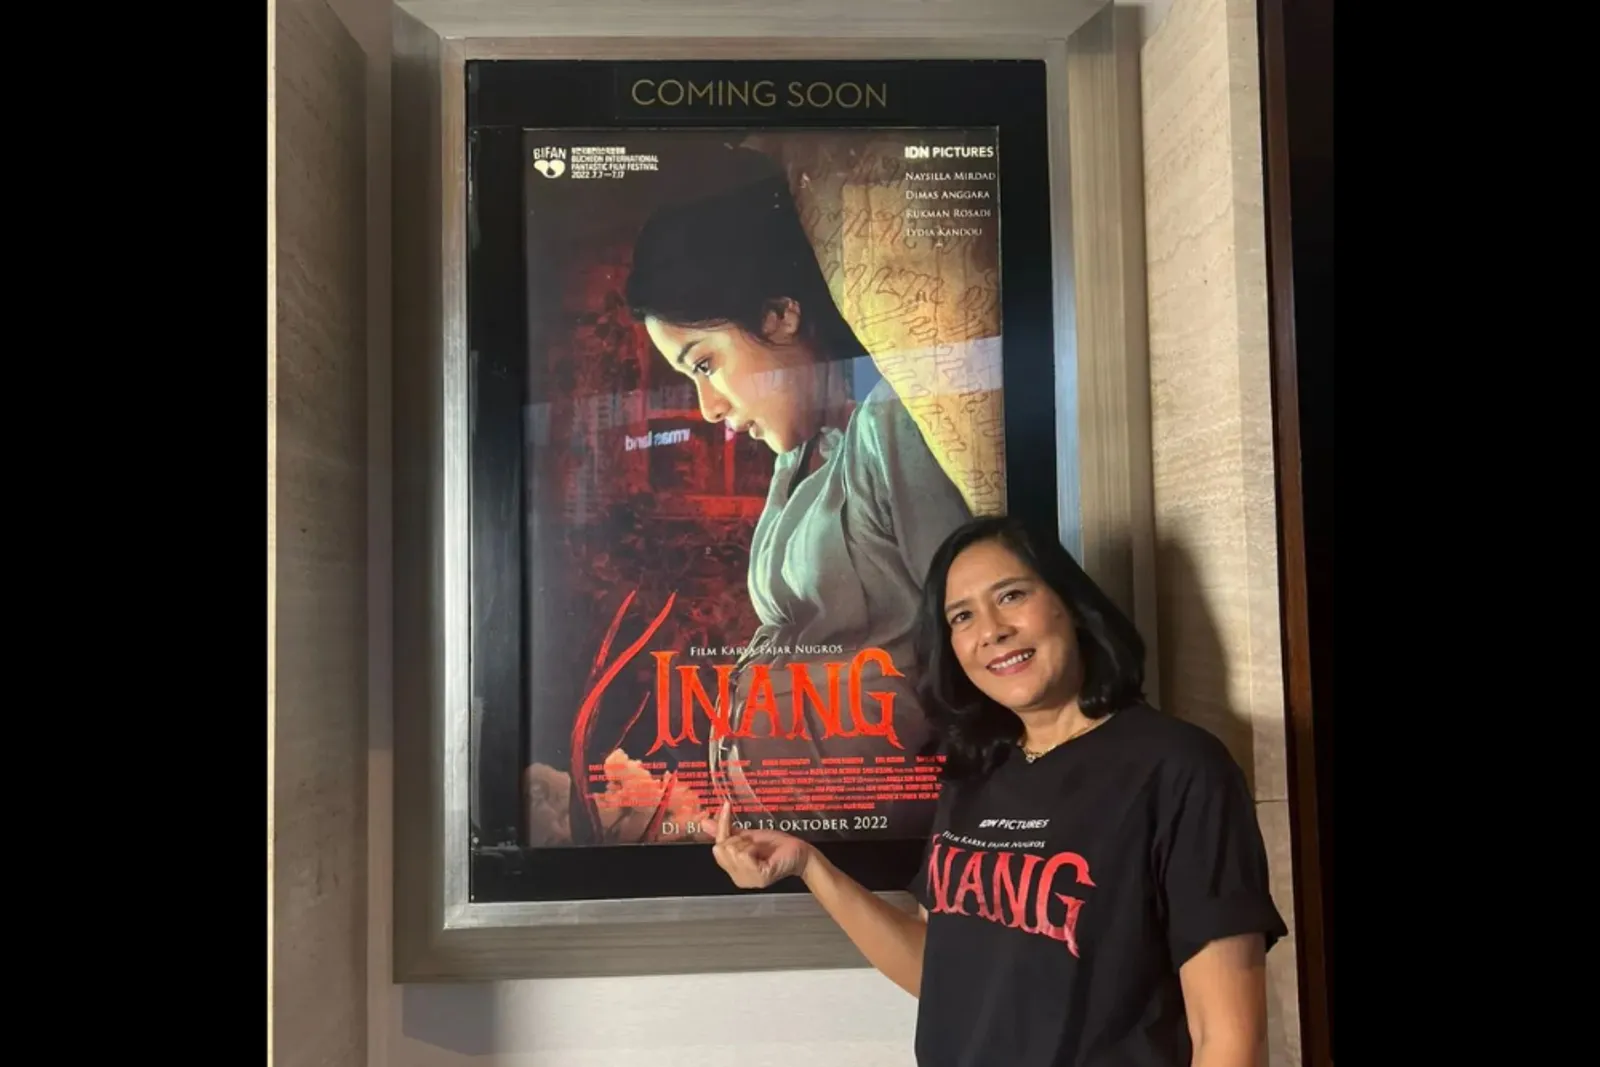 Bermain di Film 'Inang', Lydia Kandou Percaya Akan Hal Mistis